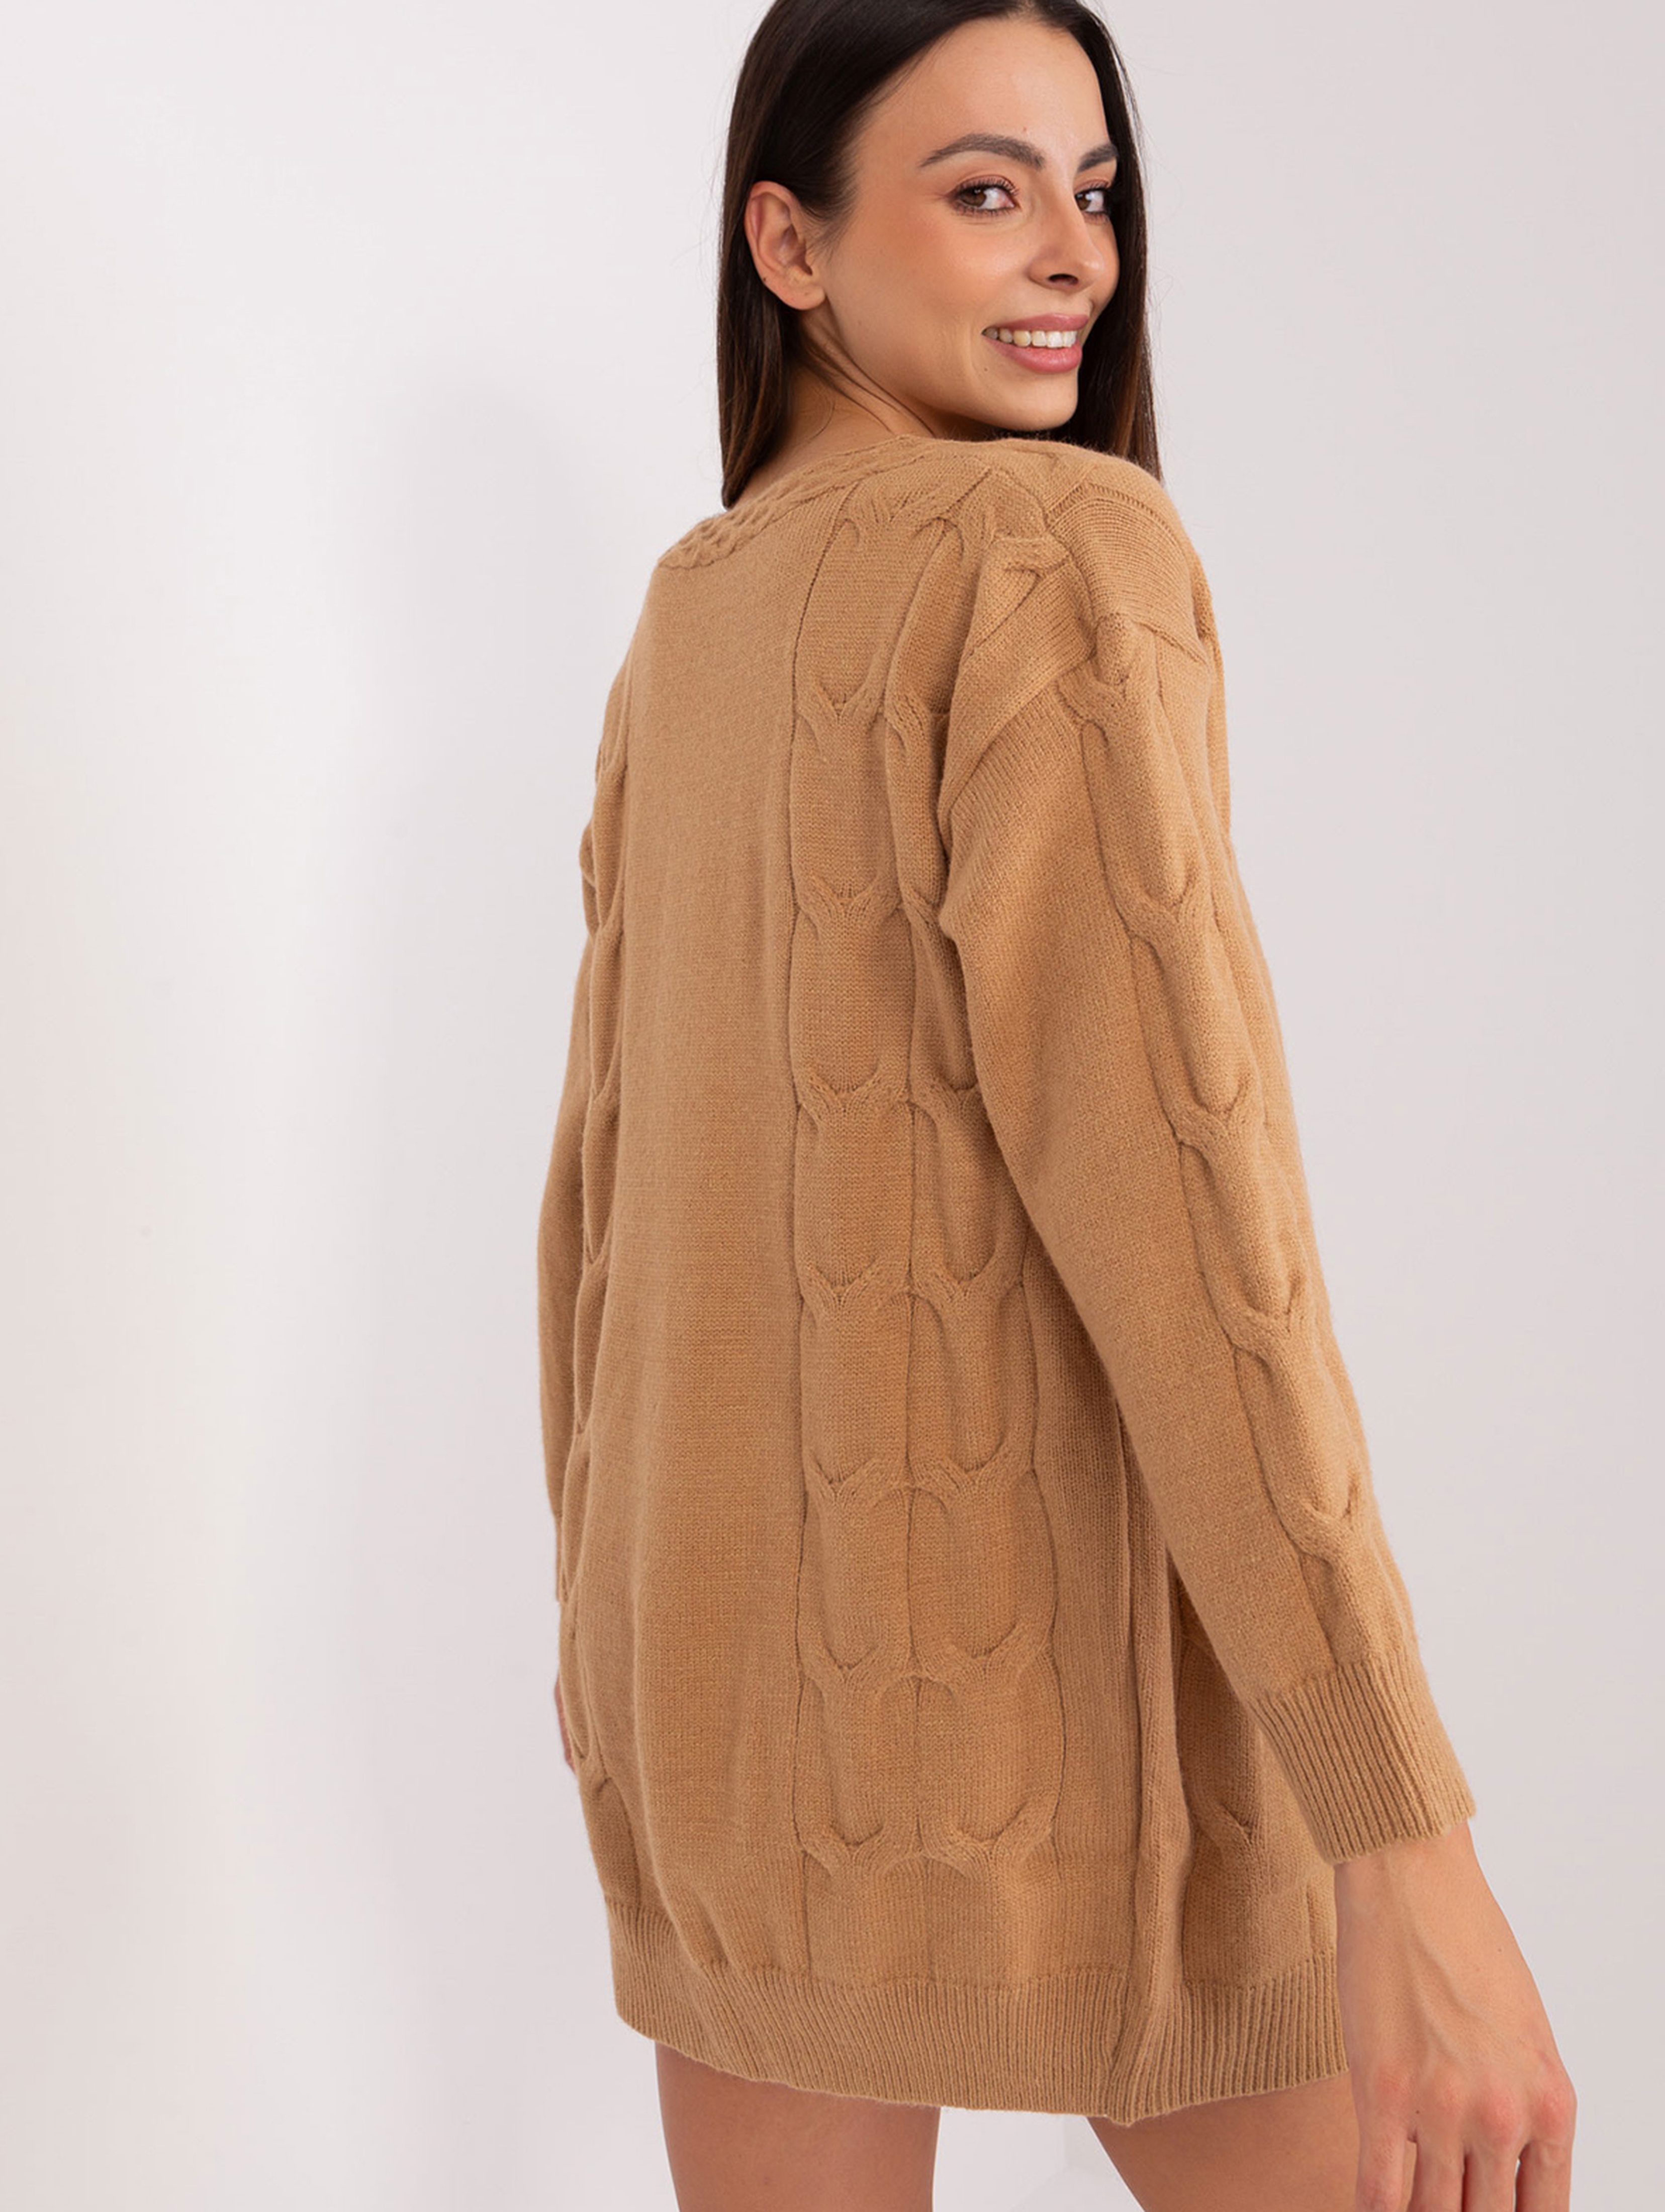 Camelowy sweter damski rozpinany z kieszeniami